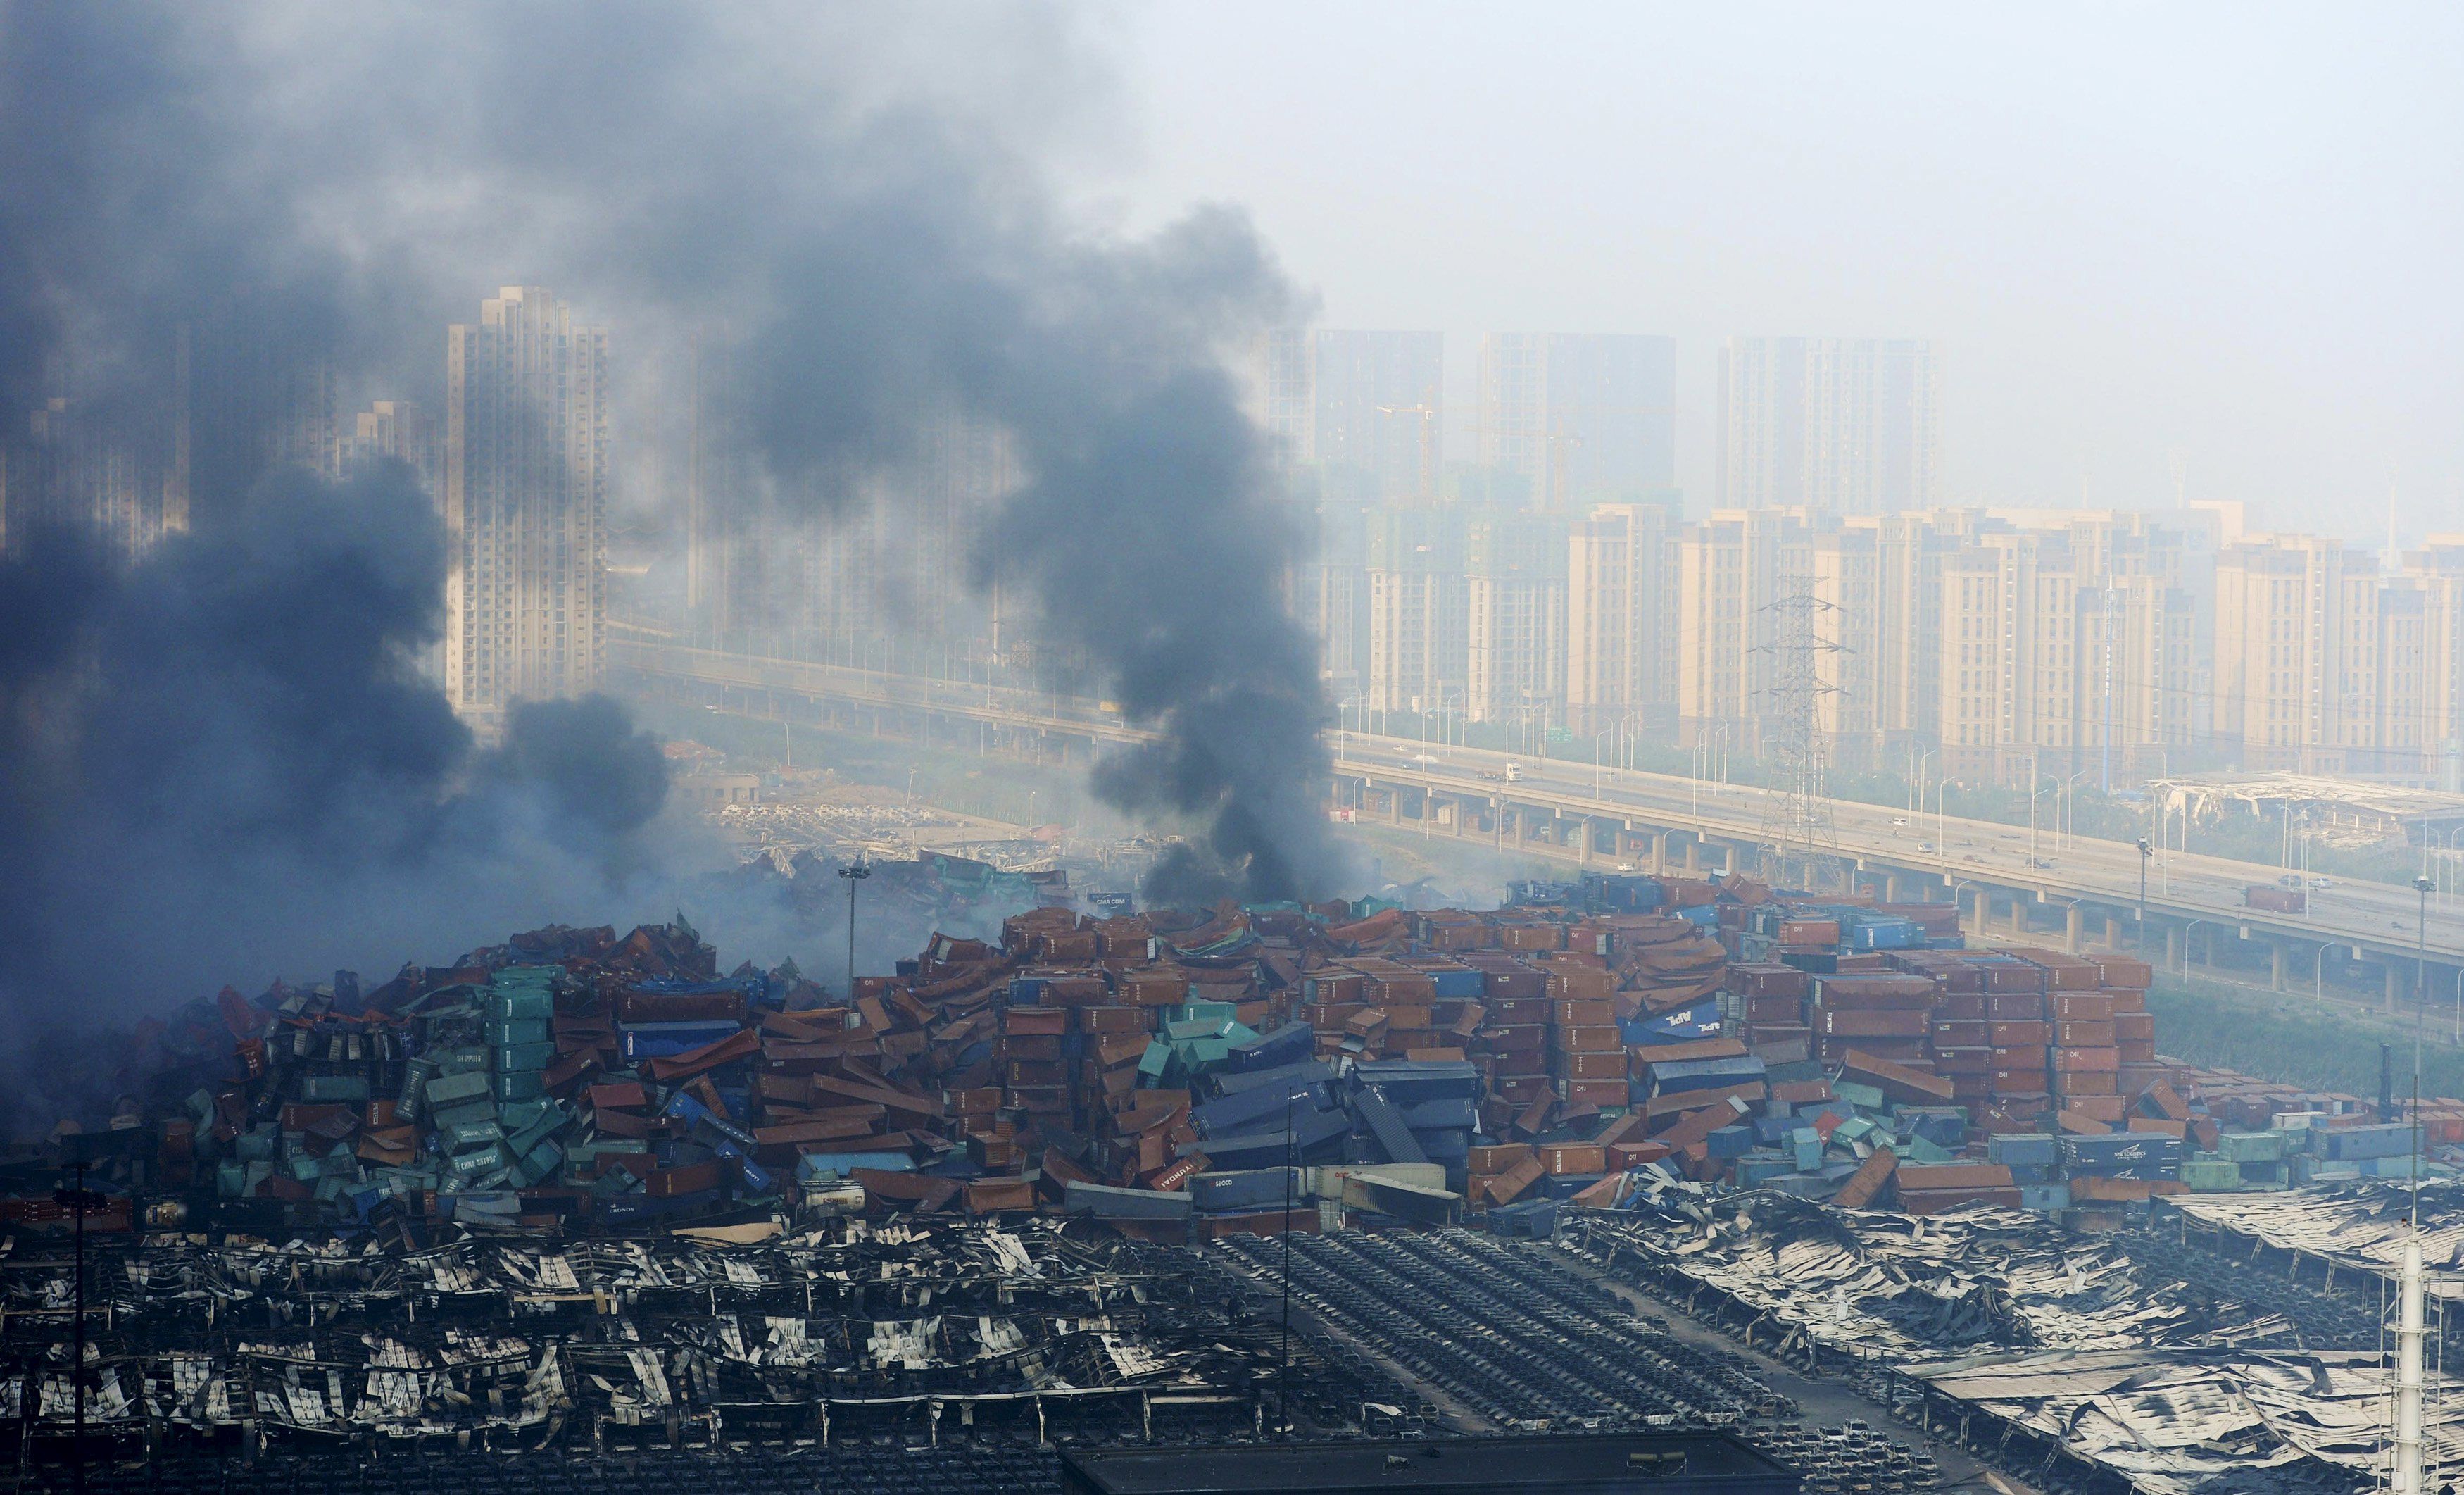 Земля после взрывов. Техногенная катастрофа в Тяньцзине 2015. Пожар на складах порта Тяньцзине Биньхай. Китай 12 августа 2015 года. Пожар в Тяньцзине Биньхай (2015). Тяньцзинь Биньхай взрыв.